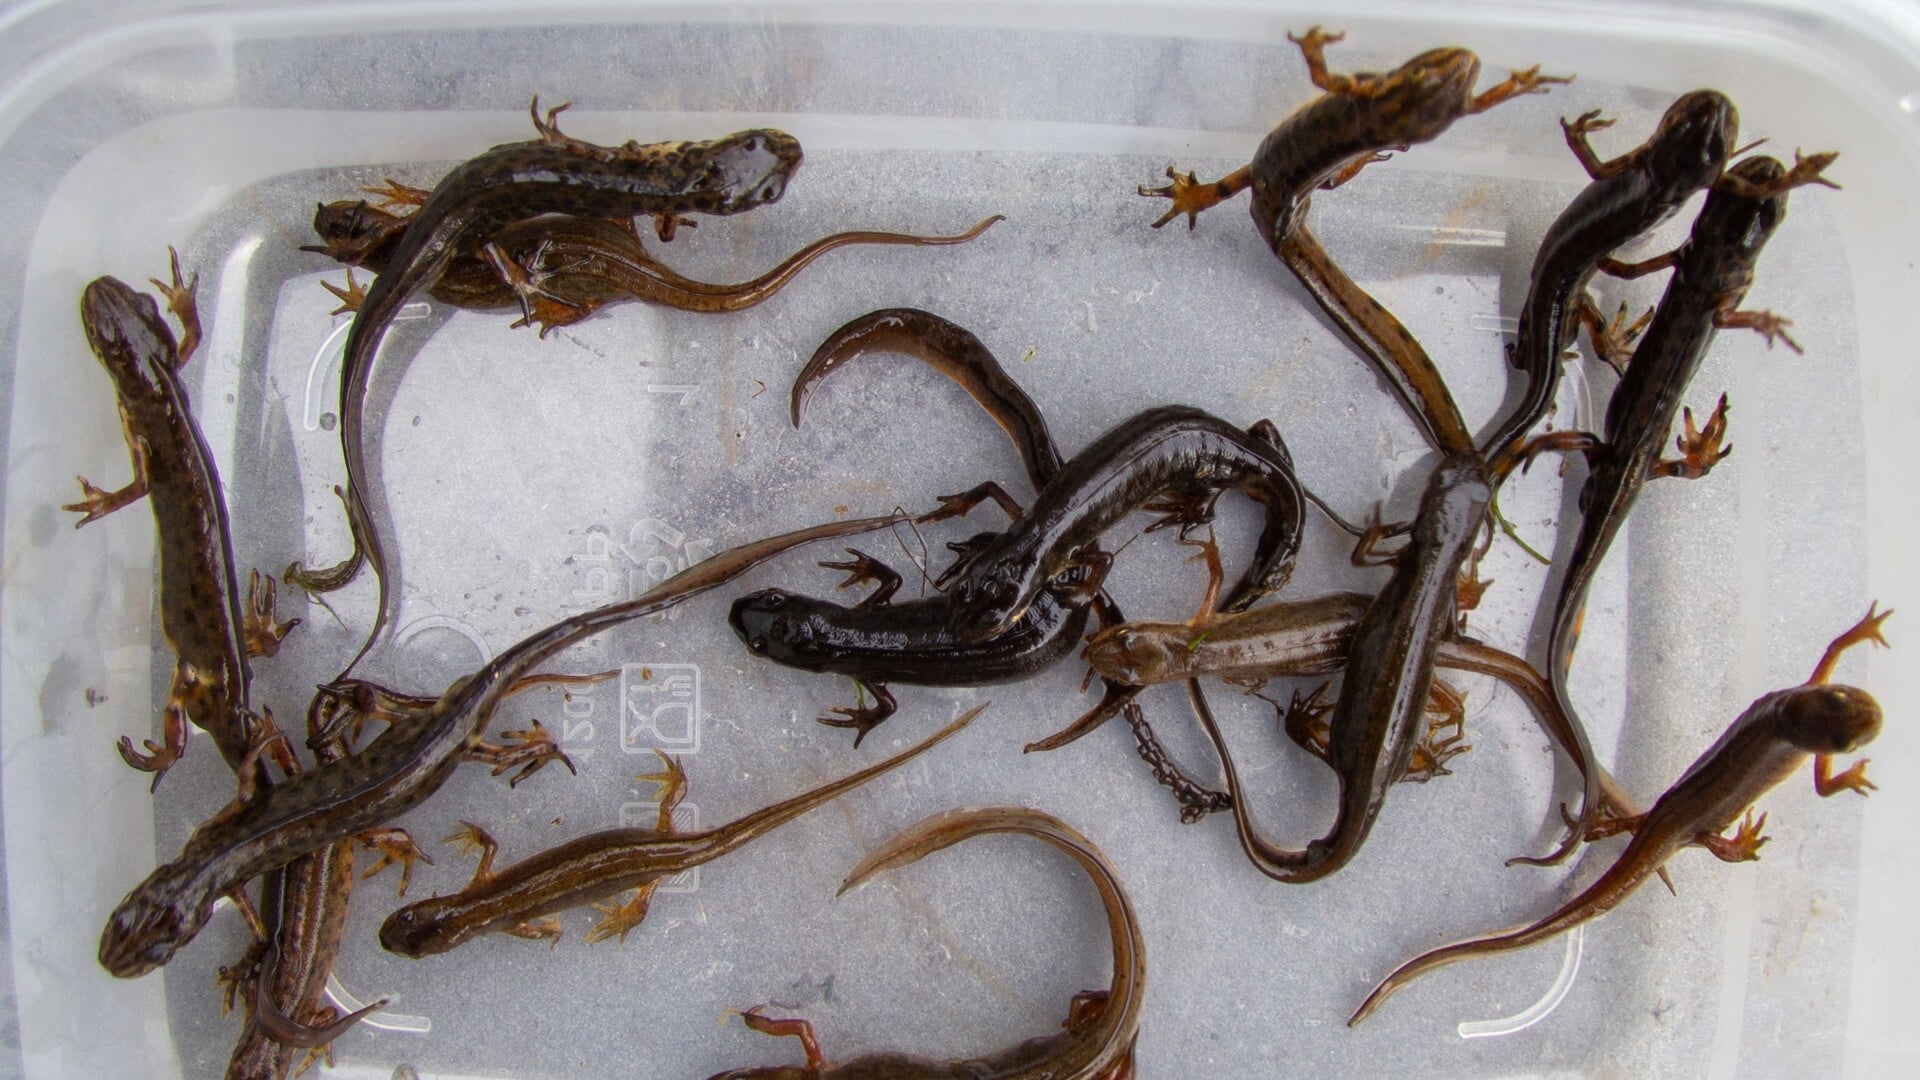 Een klein deel van de meer dan honderdvijftig salamanders uit de vijver in de woonwijk Buytenwegh. Ze zijn op een aantal plaatsen waar al salamanders leven weer losgelaten. Foto: Arno van Berge Henegouwen